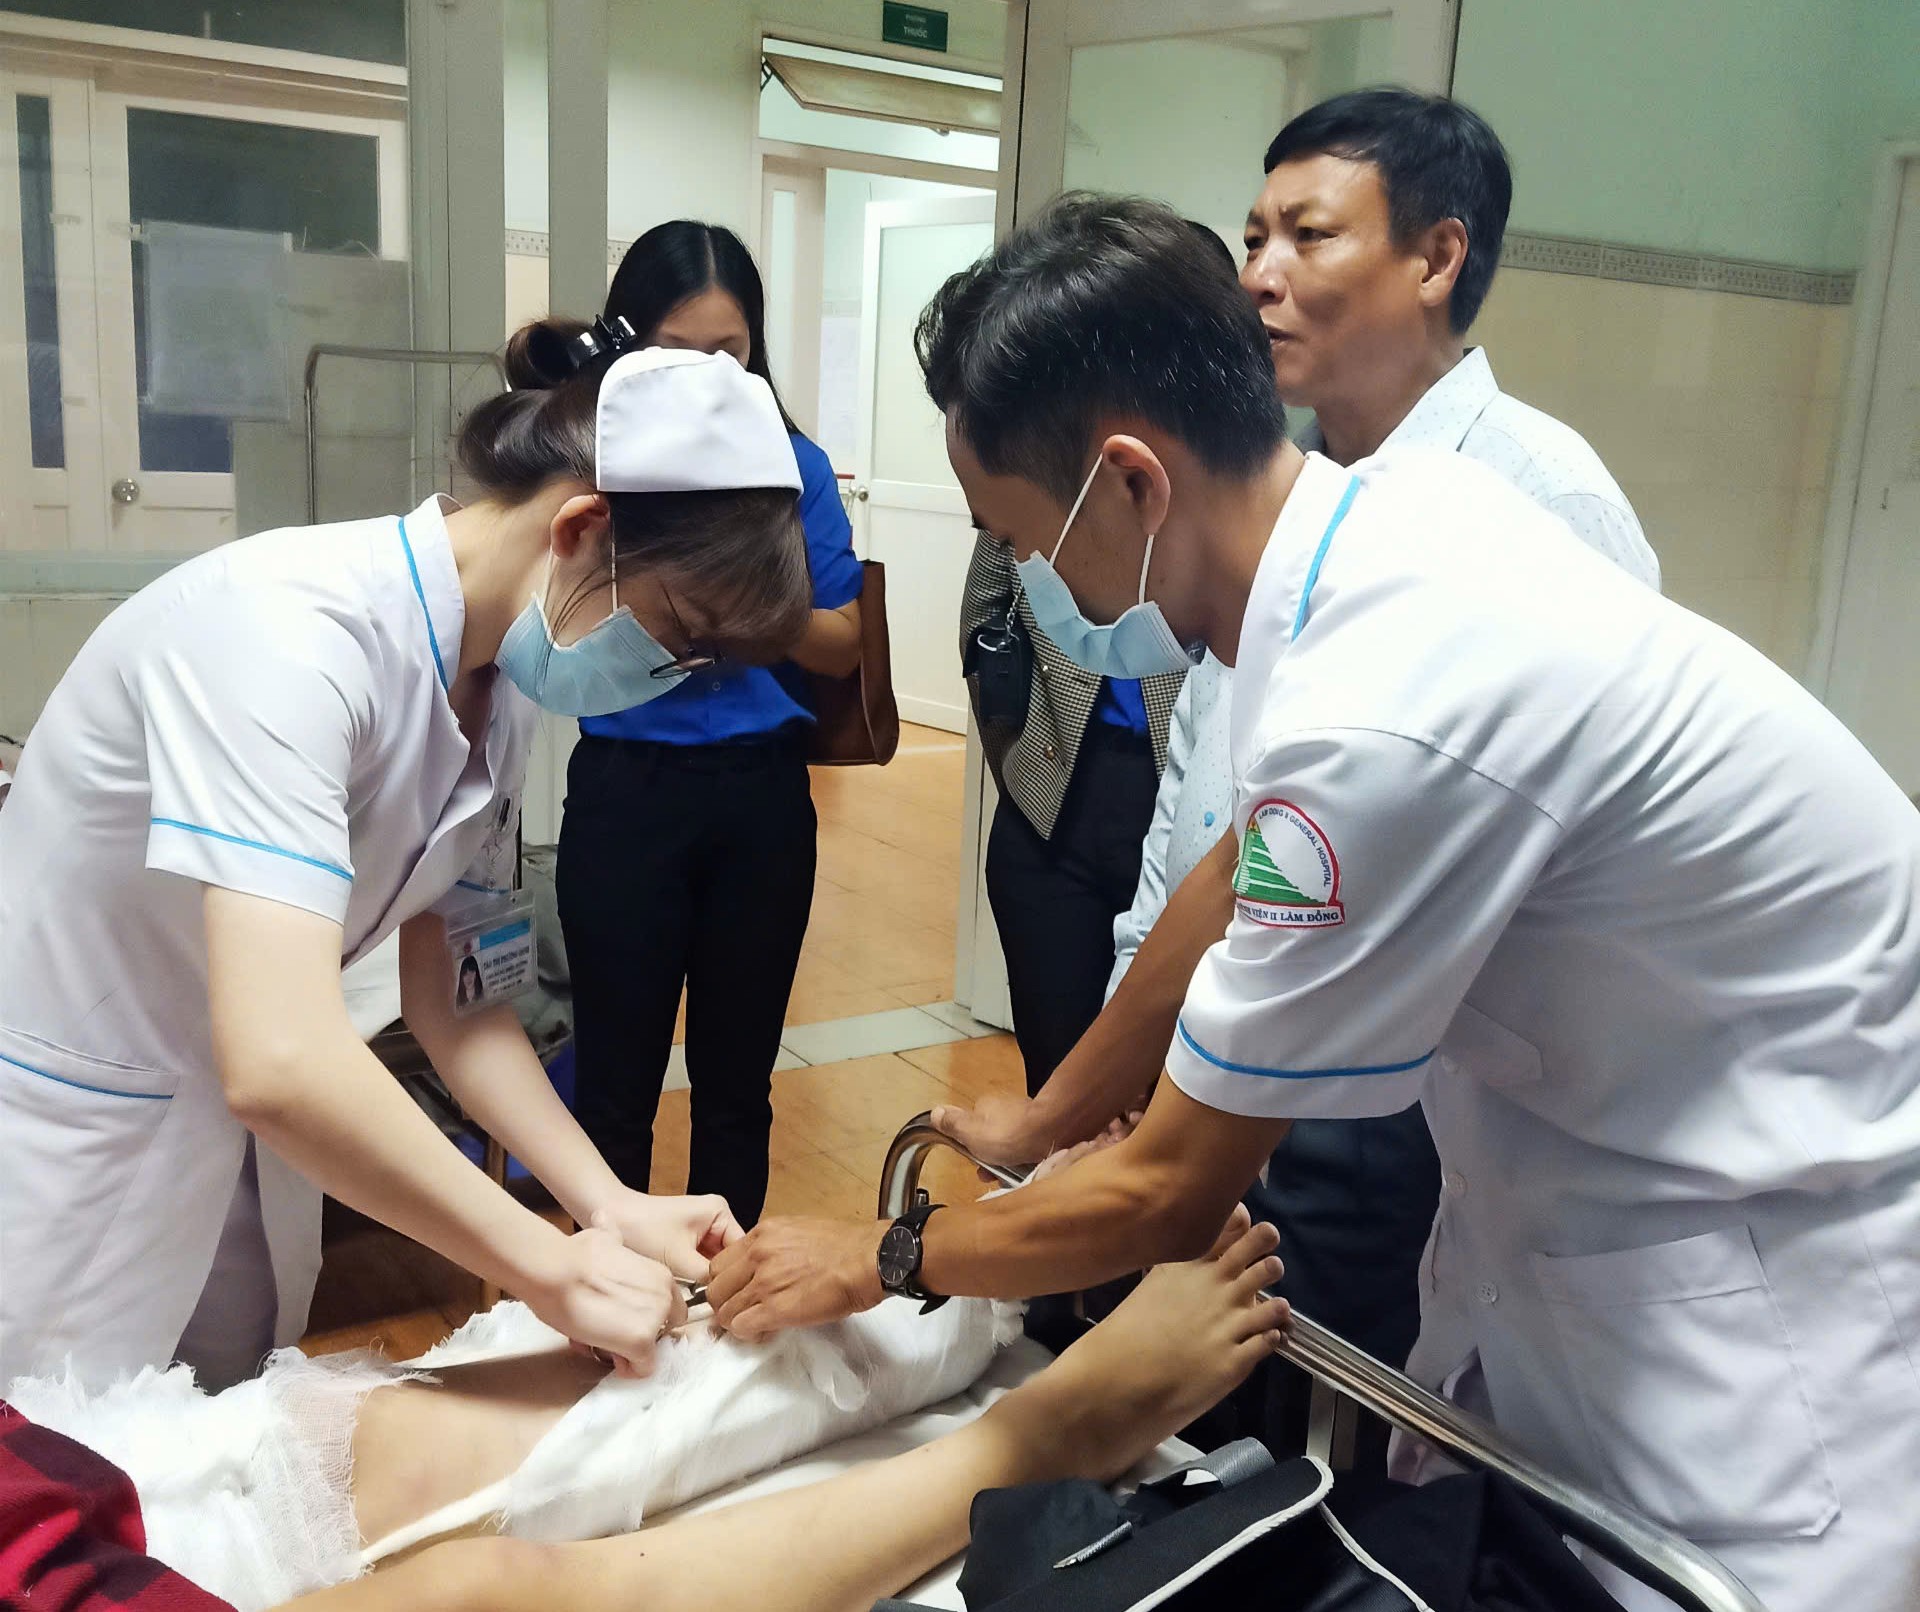 Sau khi được chuyển tới Bệnh viện, em Trần Tuấn Anh được các y, bác sĩ tận tình thăm khám, chăm sóc